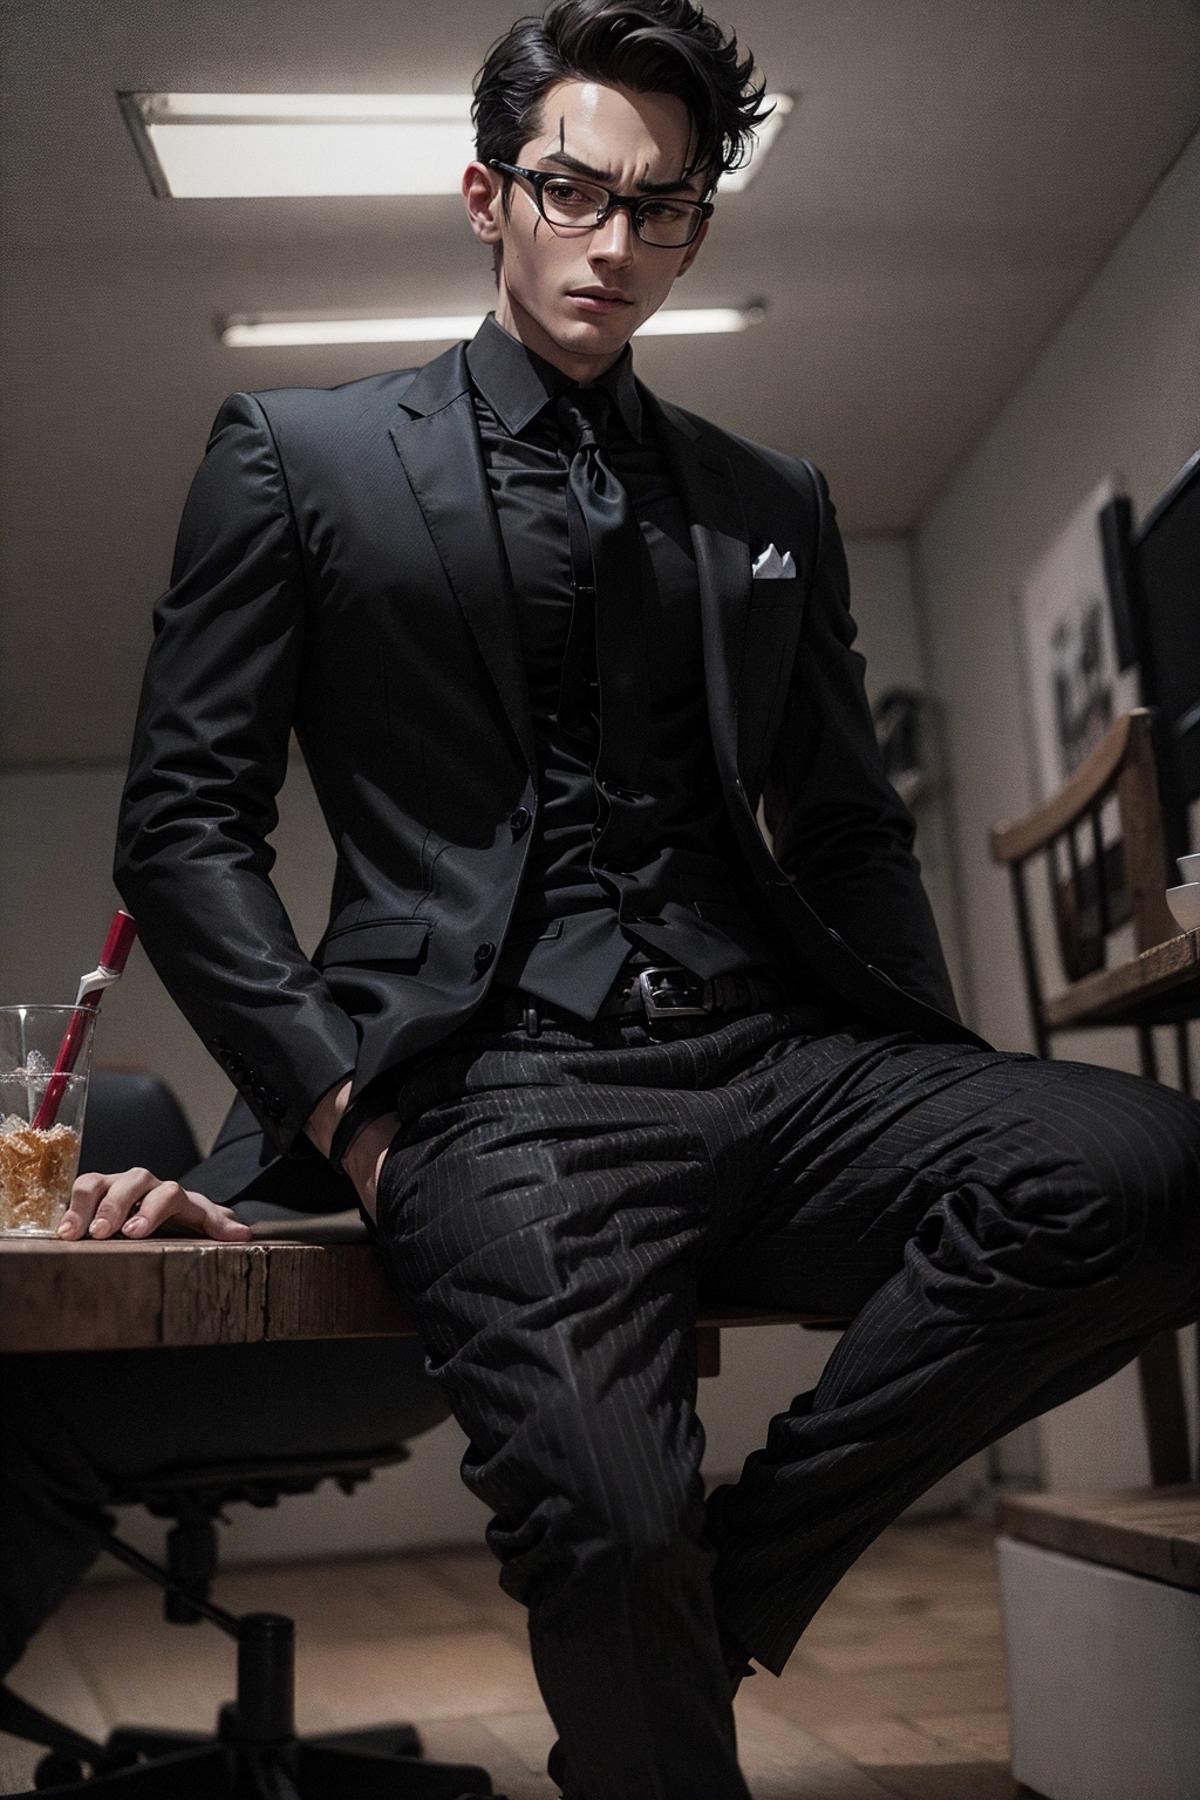 All Black Suit | Attire image by PotatCat